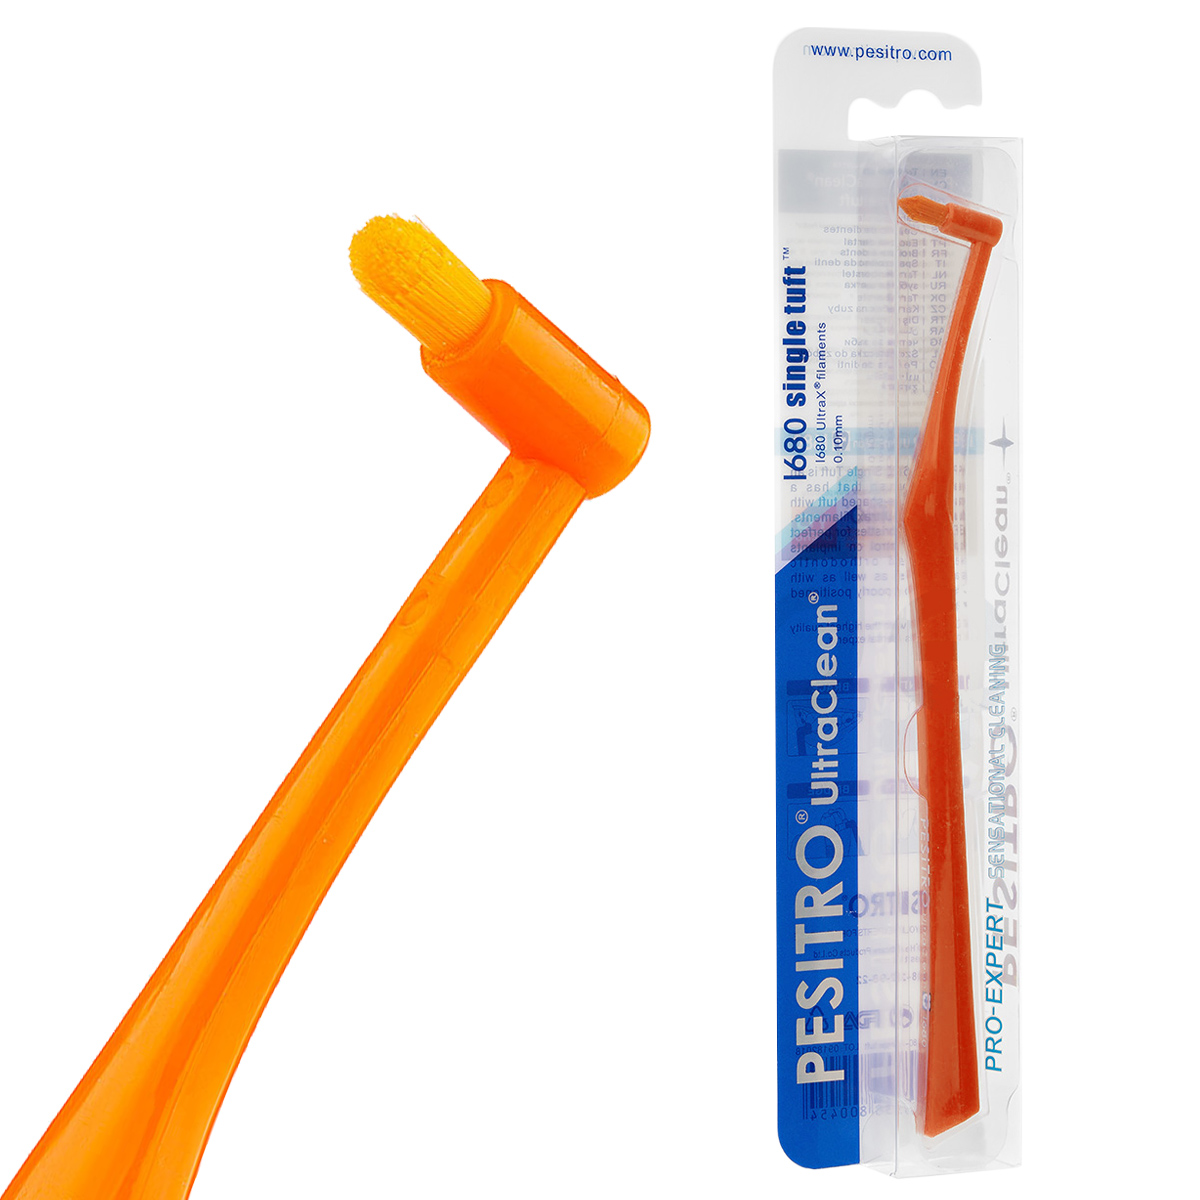 Зубная щетка PESITRO UltraClean Ultra Soft 1680 Single Tuft president зубная нить ultra flat для плотного зубного ряда и имплантов 20 м 16 мл мята оранжевый голубой